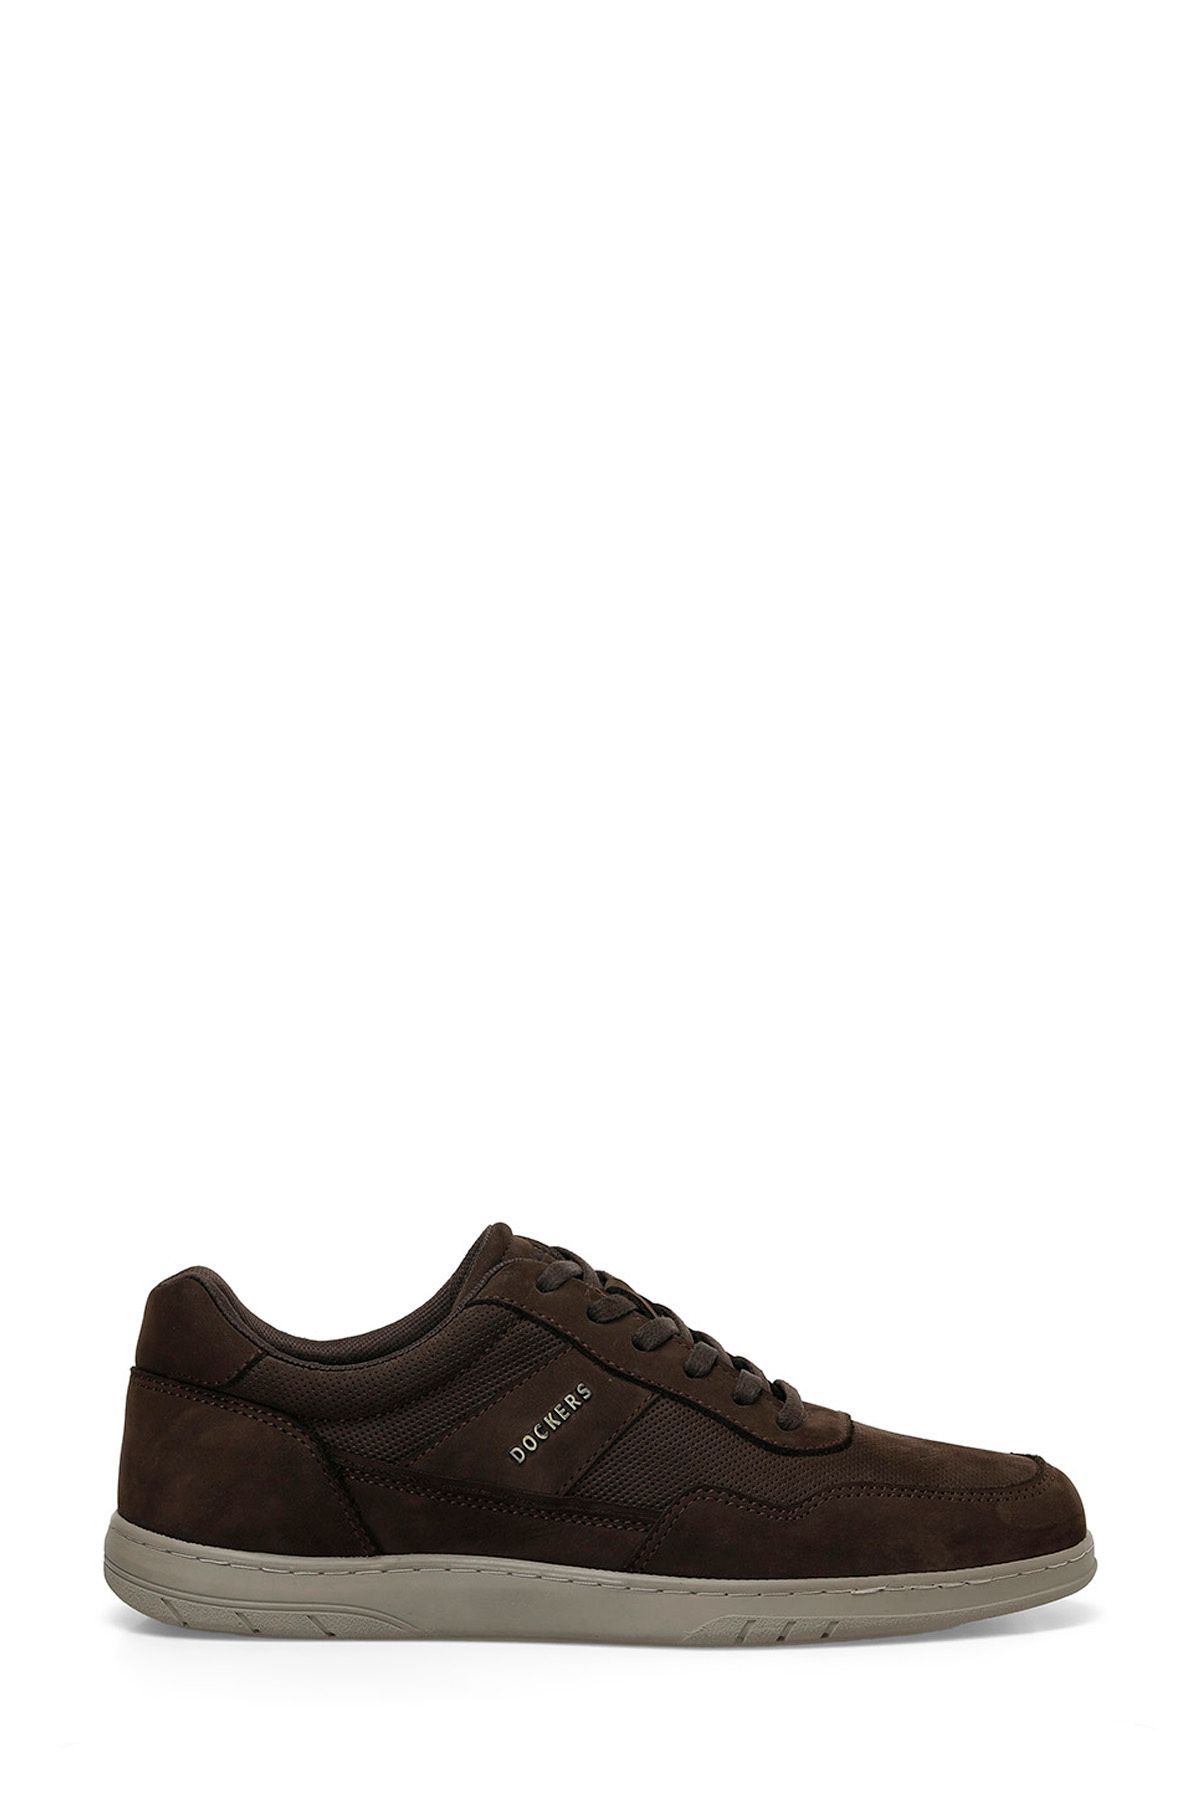 Dockers 236251 4FX Kahverengi Erkek Ayakkabı